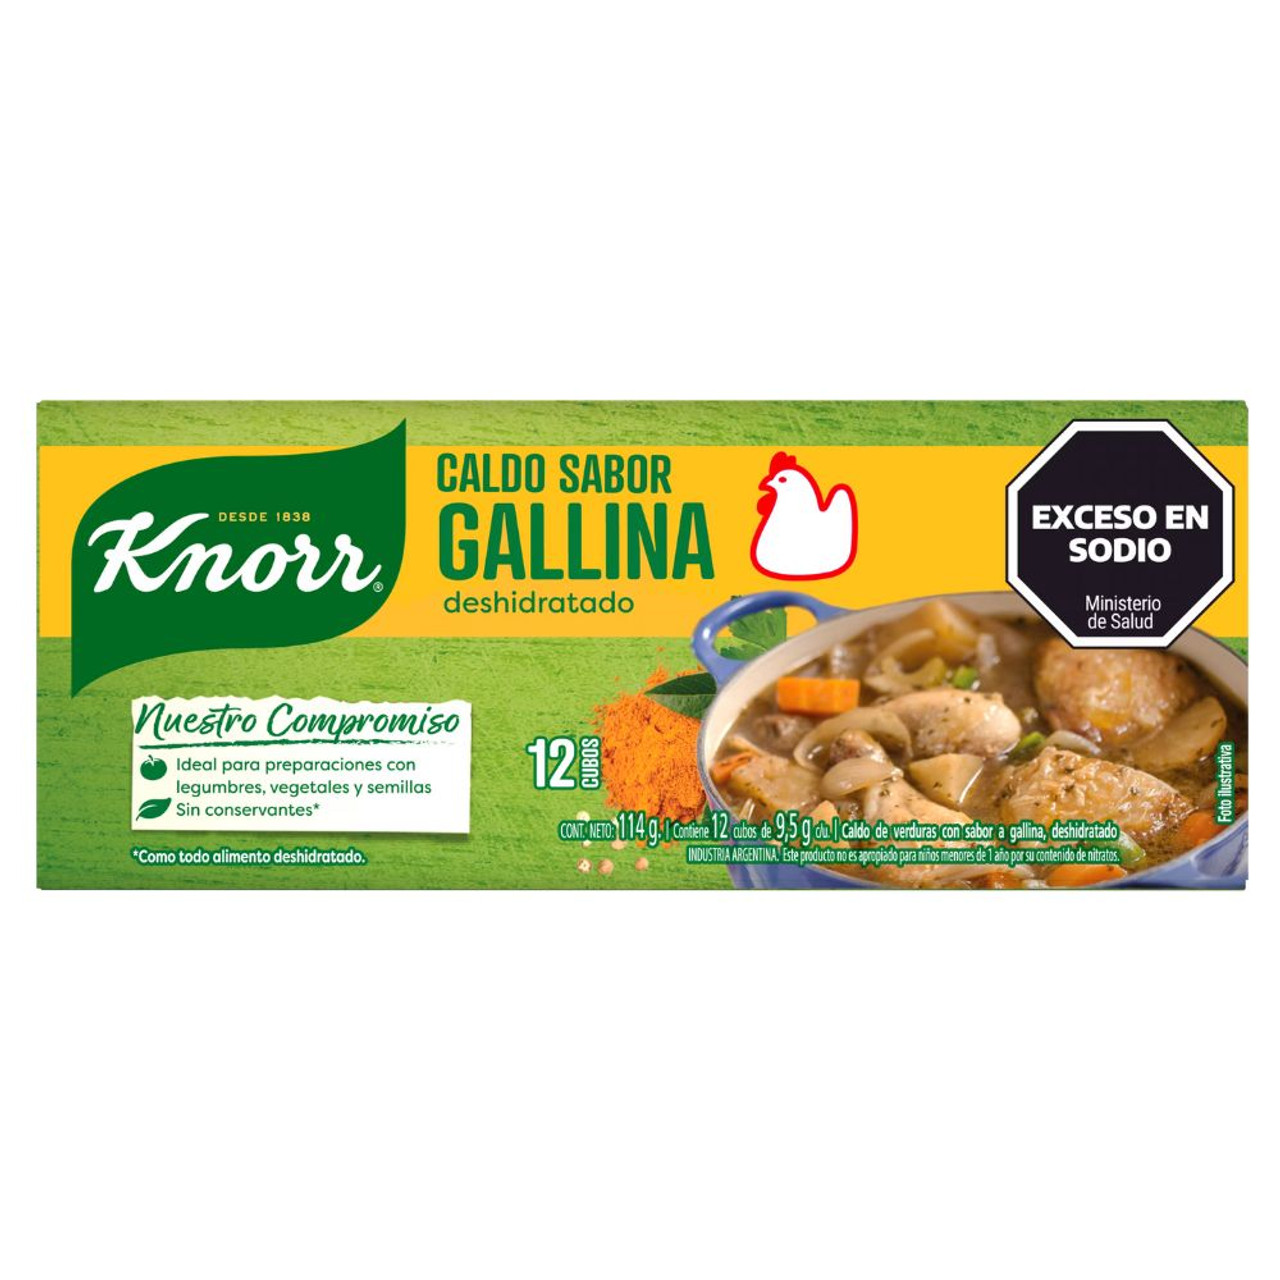 Knorr Caldo Sabor Gallina Dehydrated Chicken Soup Broth Caldo Deshidratado,  114 g / 4.02 oz (12 caldos